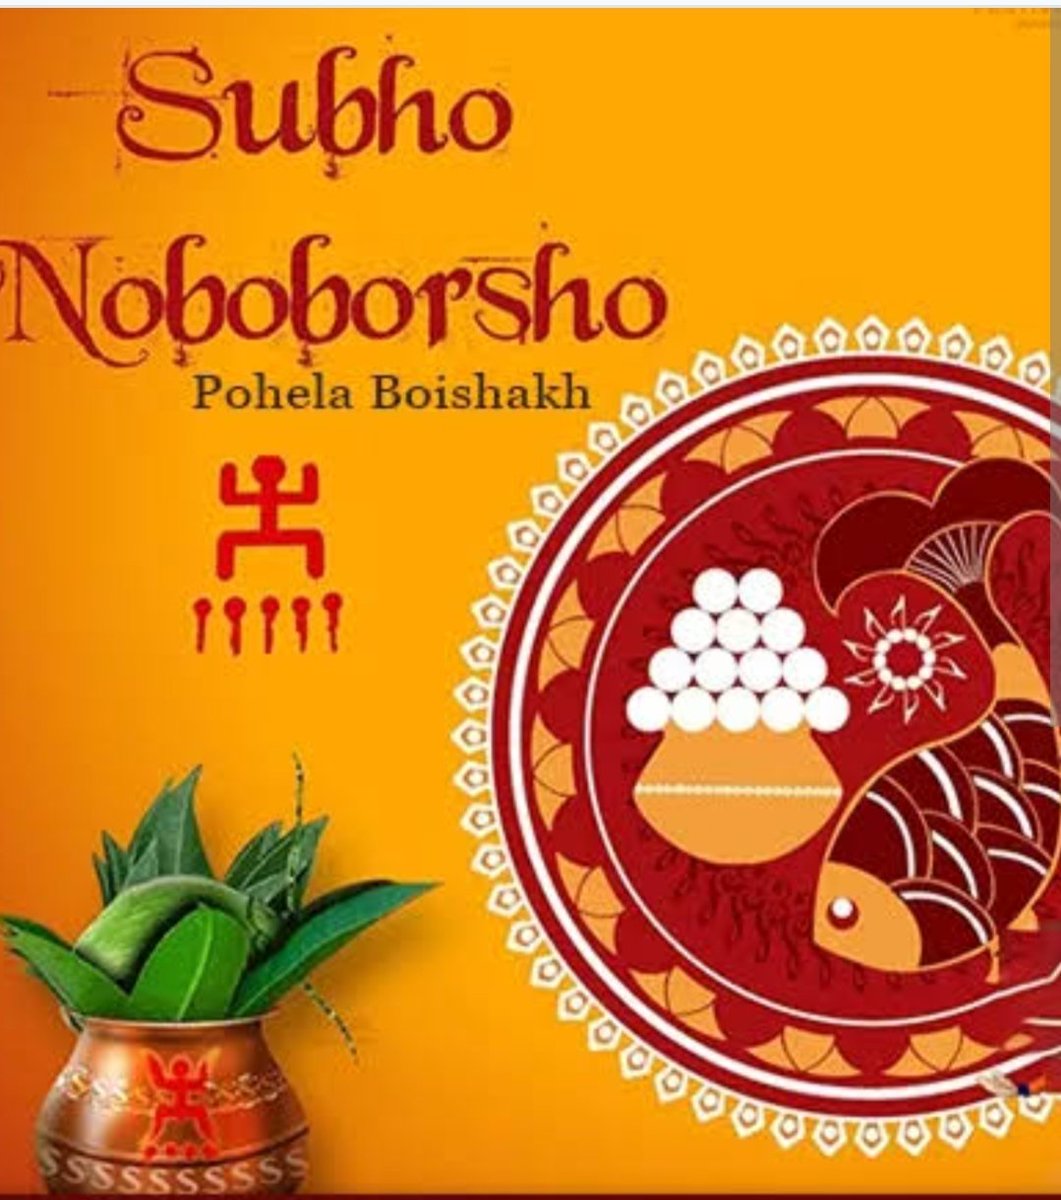 #ShubhoNoboborsho to all celebrating.